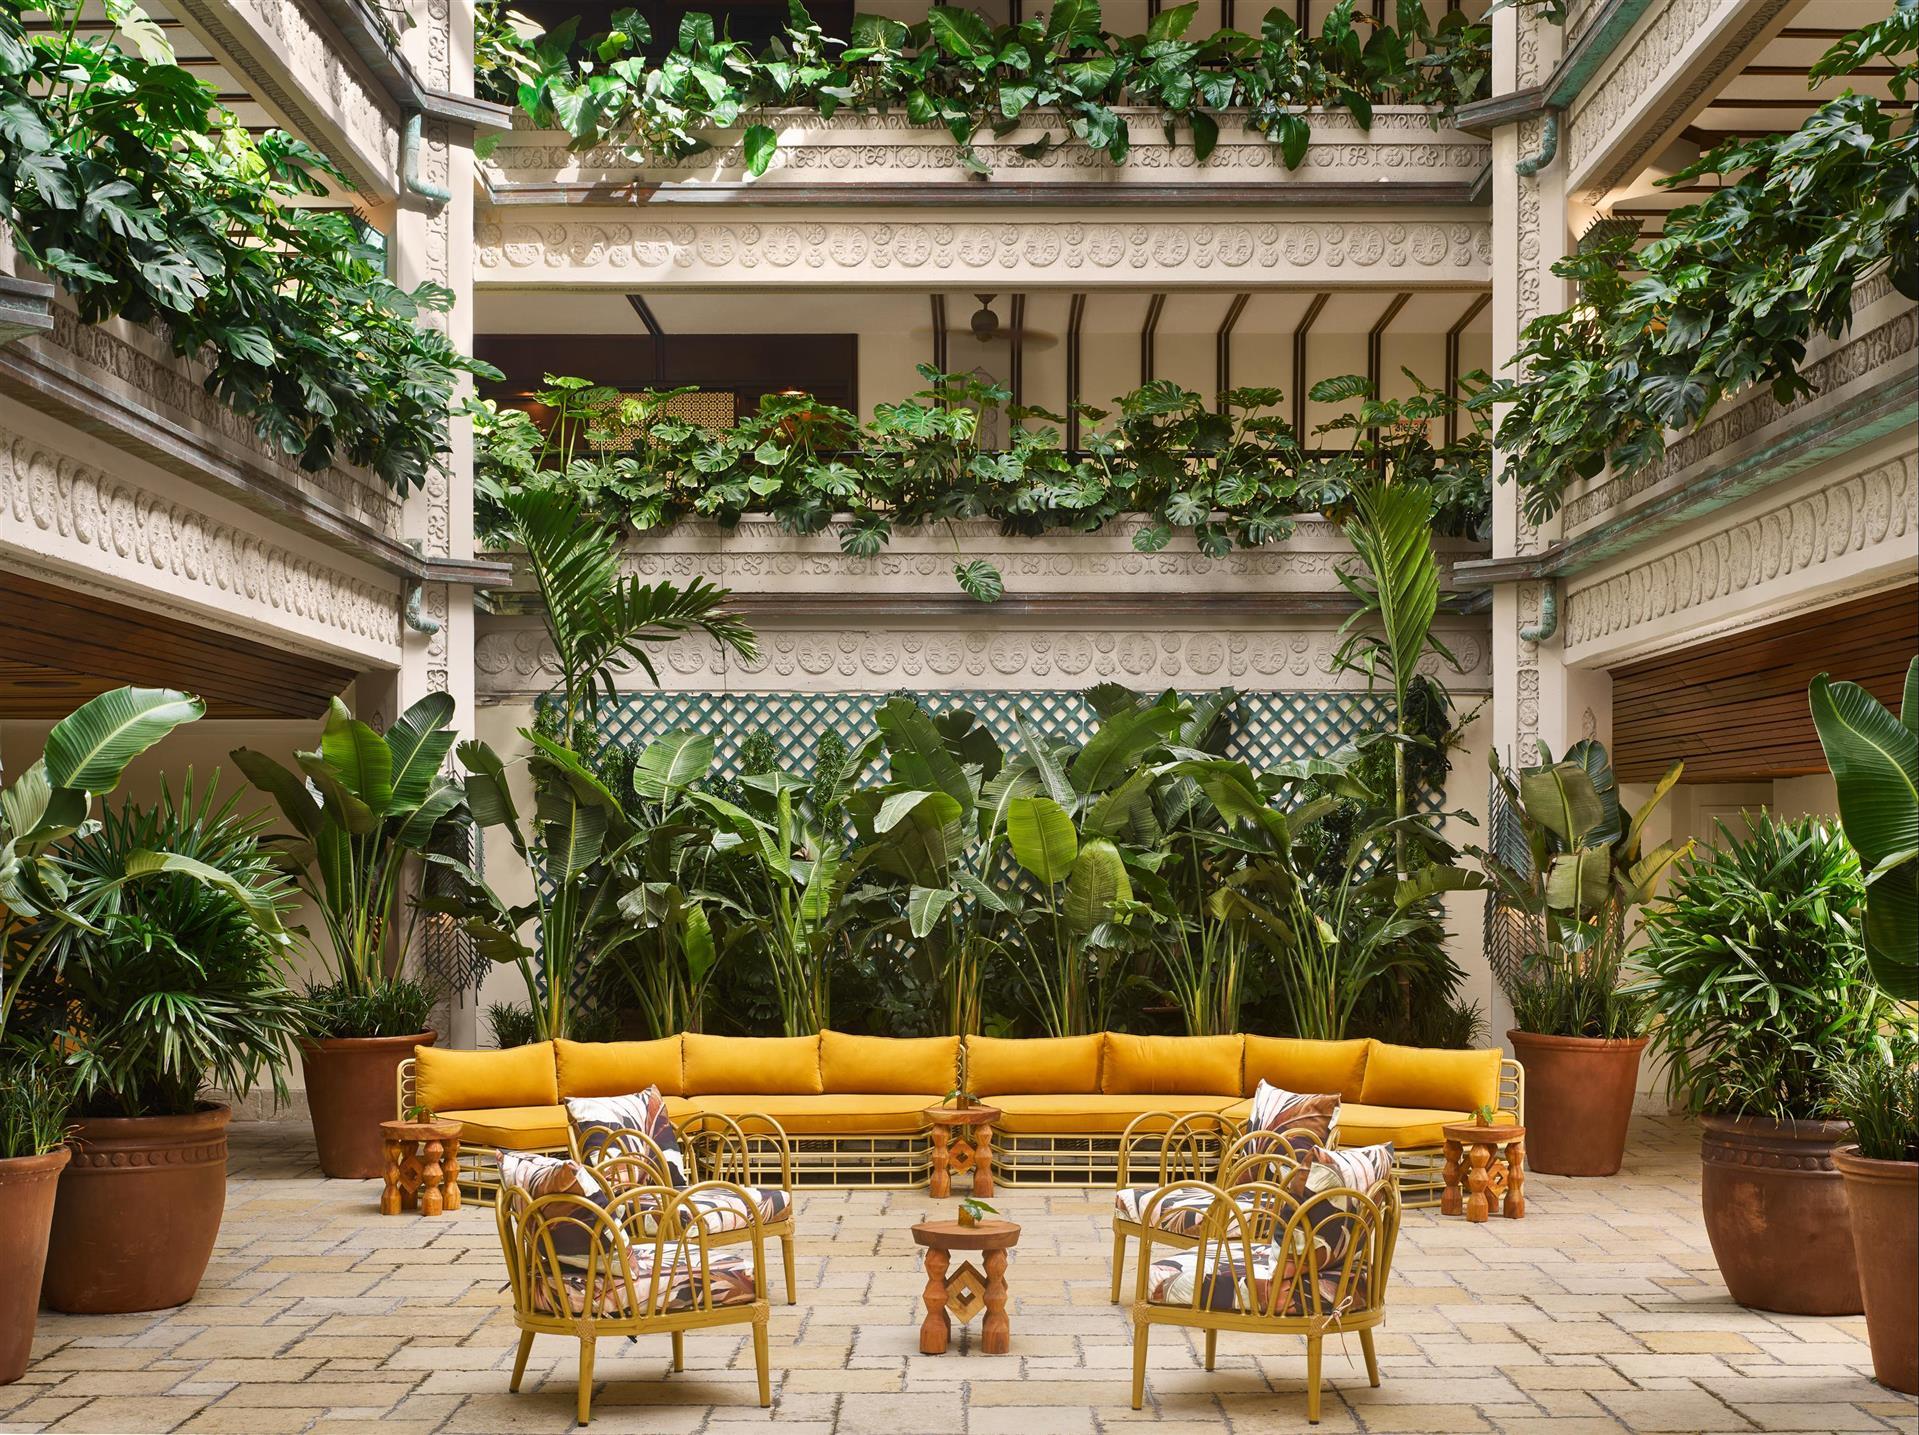 Mayfair House Hotel & Garden in Miami, FL